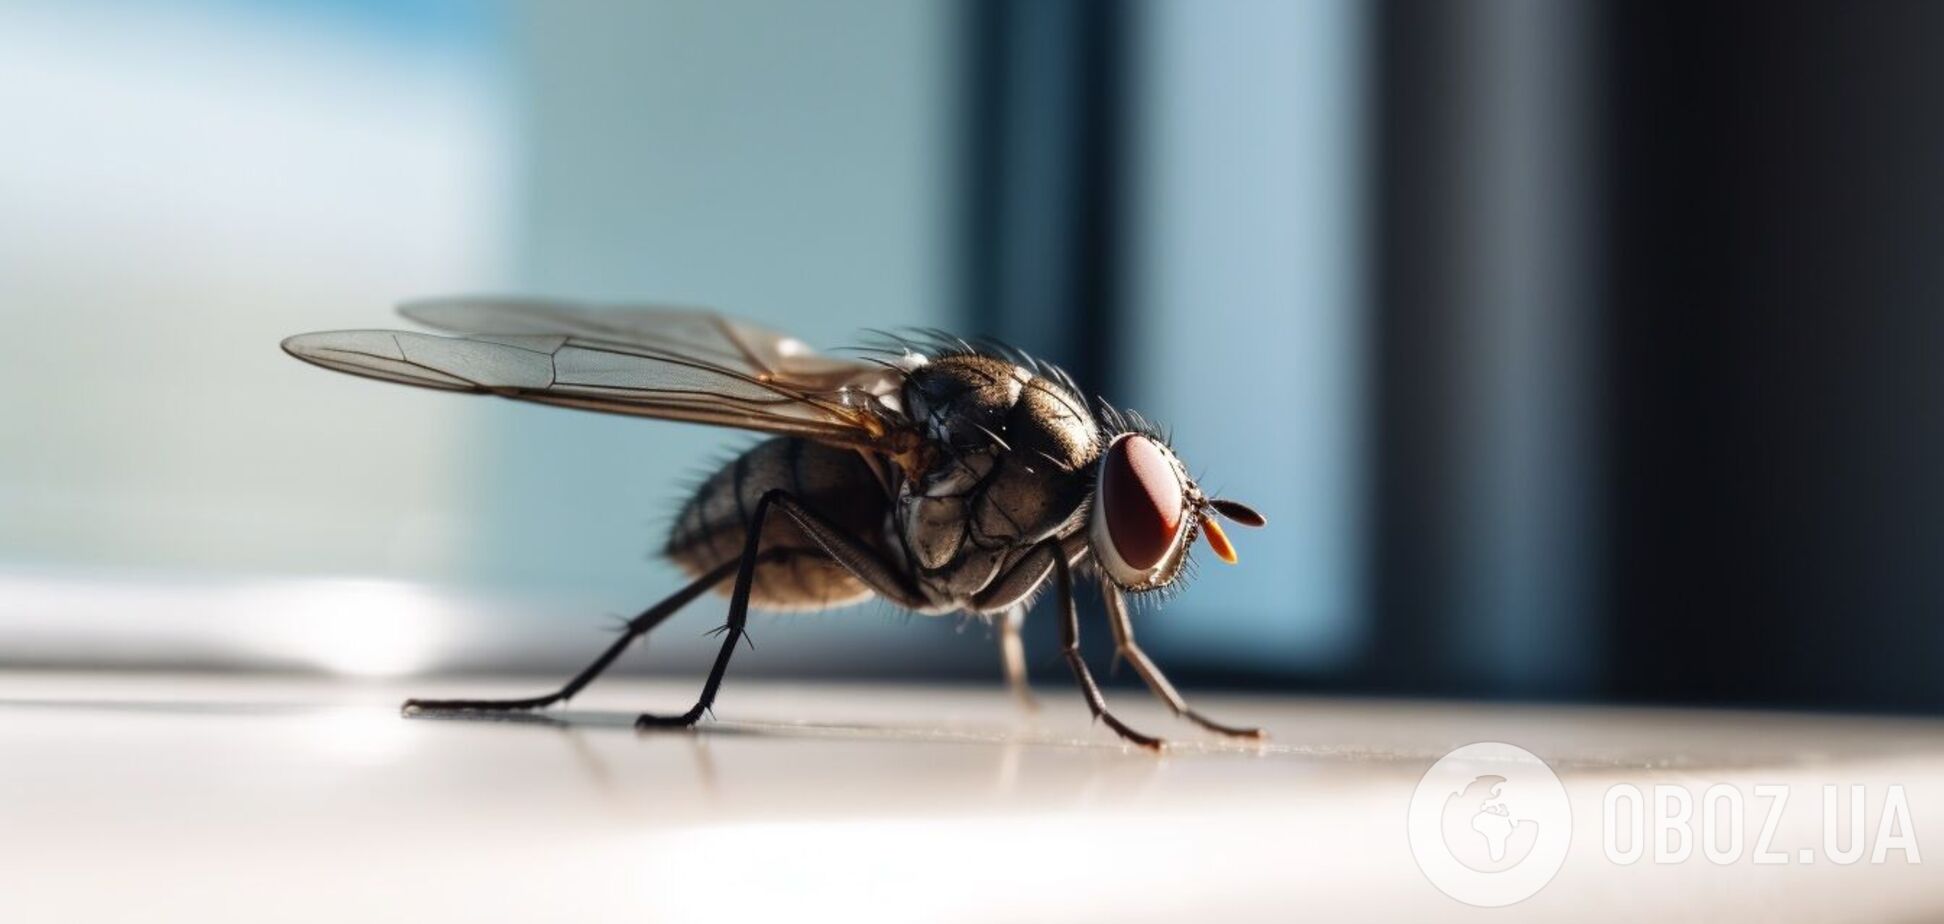 Как избавиться от мух и муравьев дома: помогут два бытовых продукта